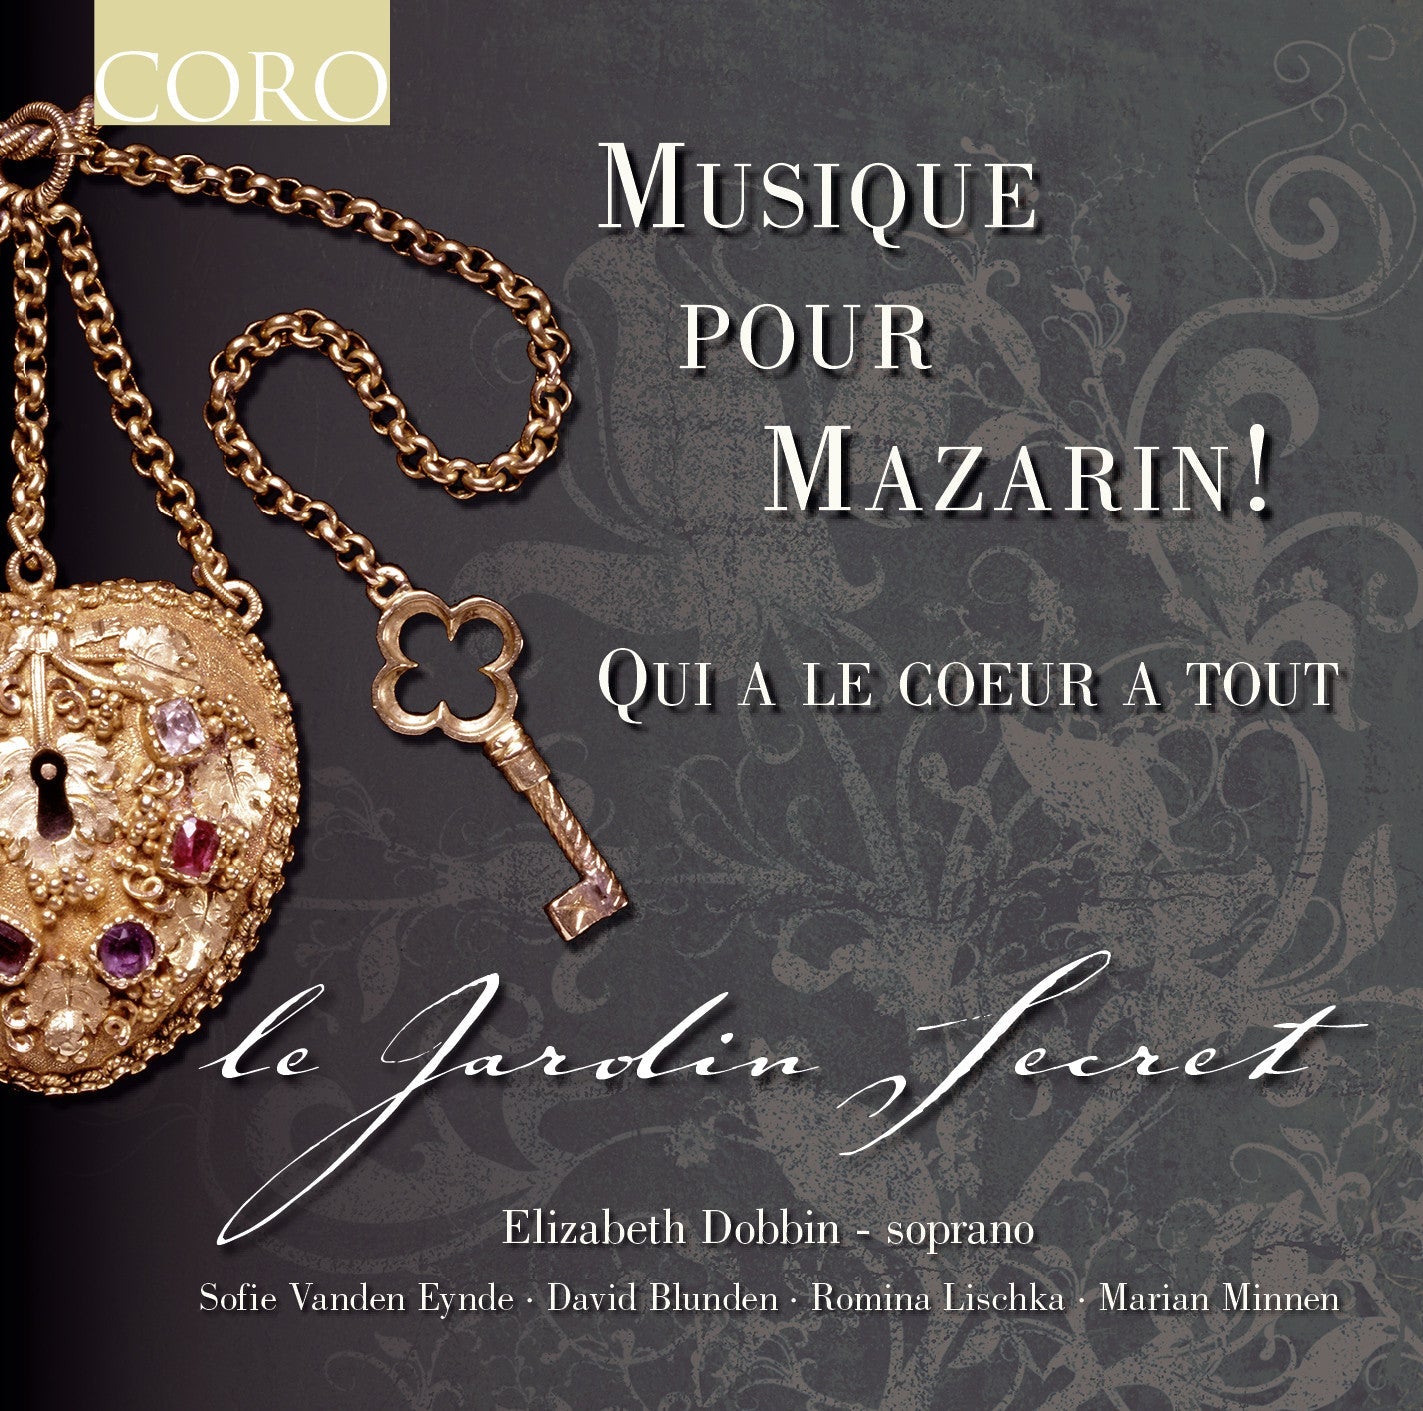 Musique Pour Mazarin! - Le Jardin Secret